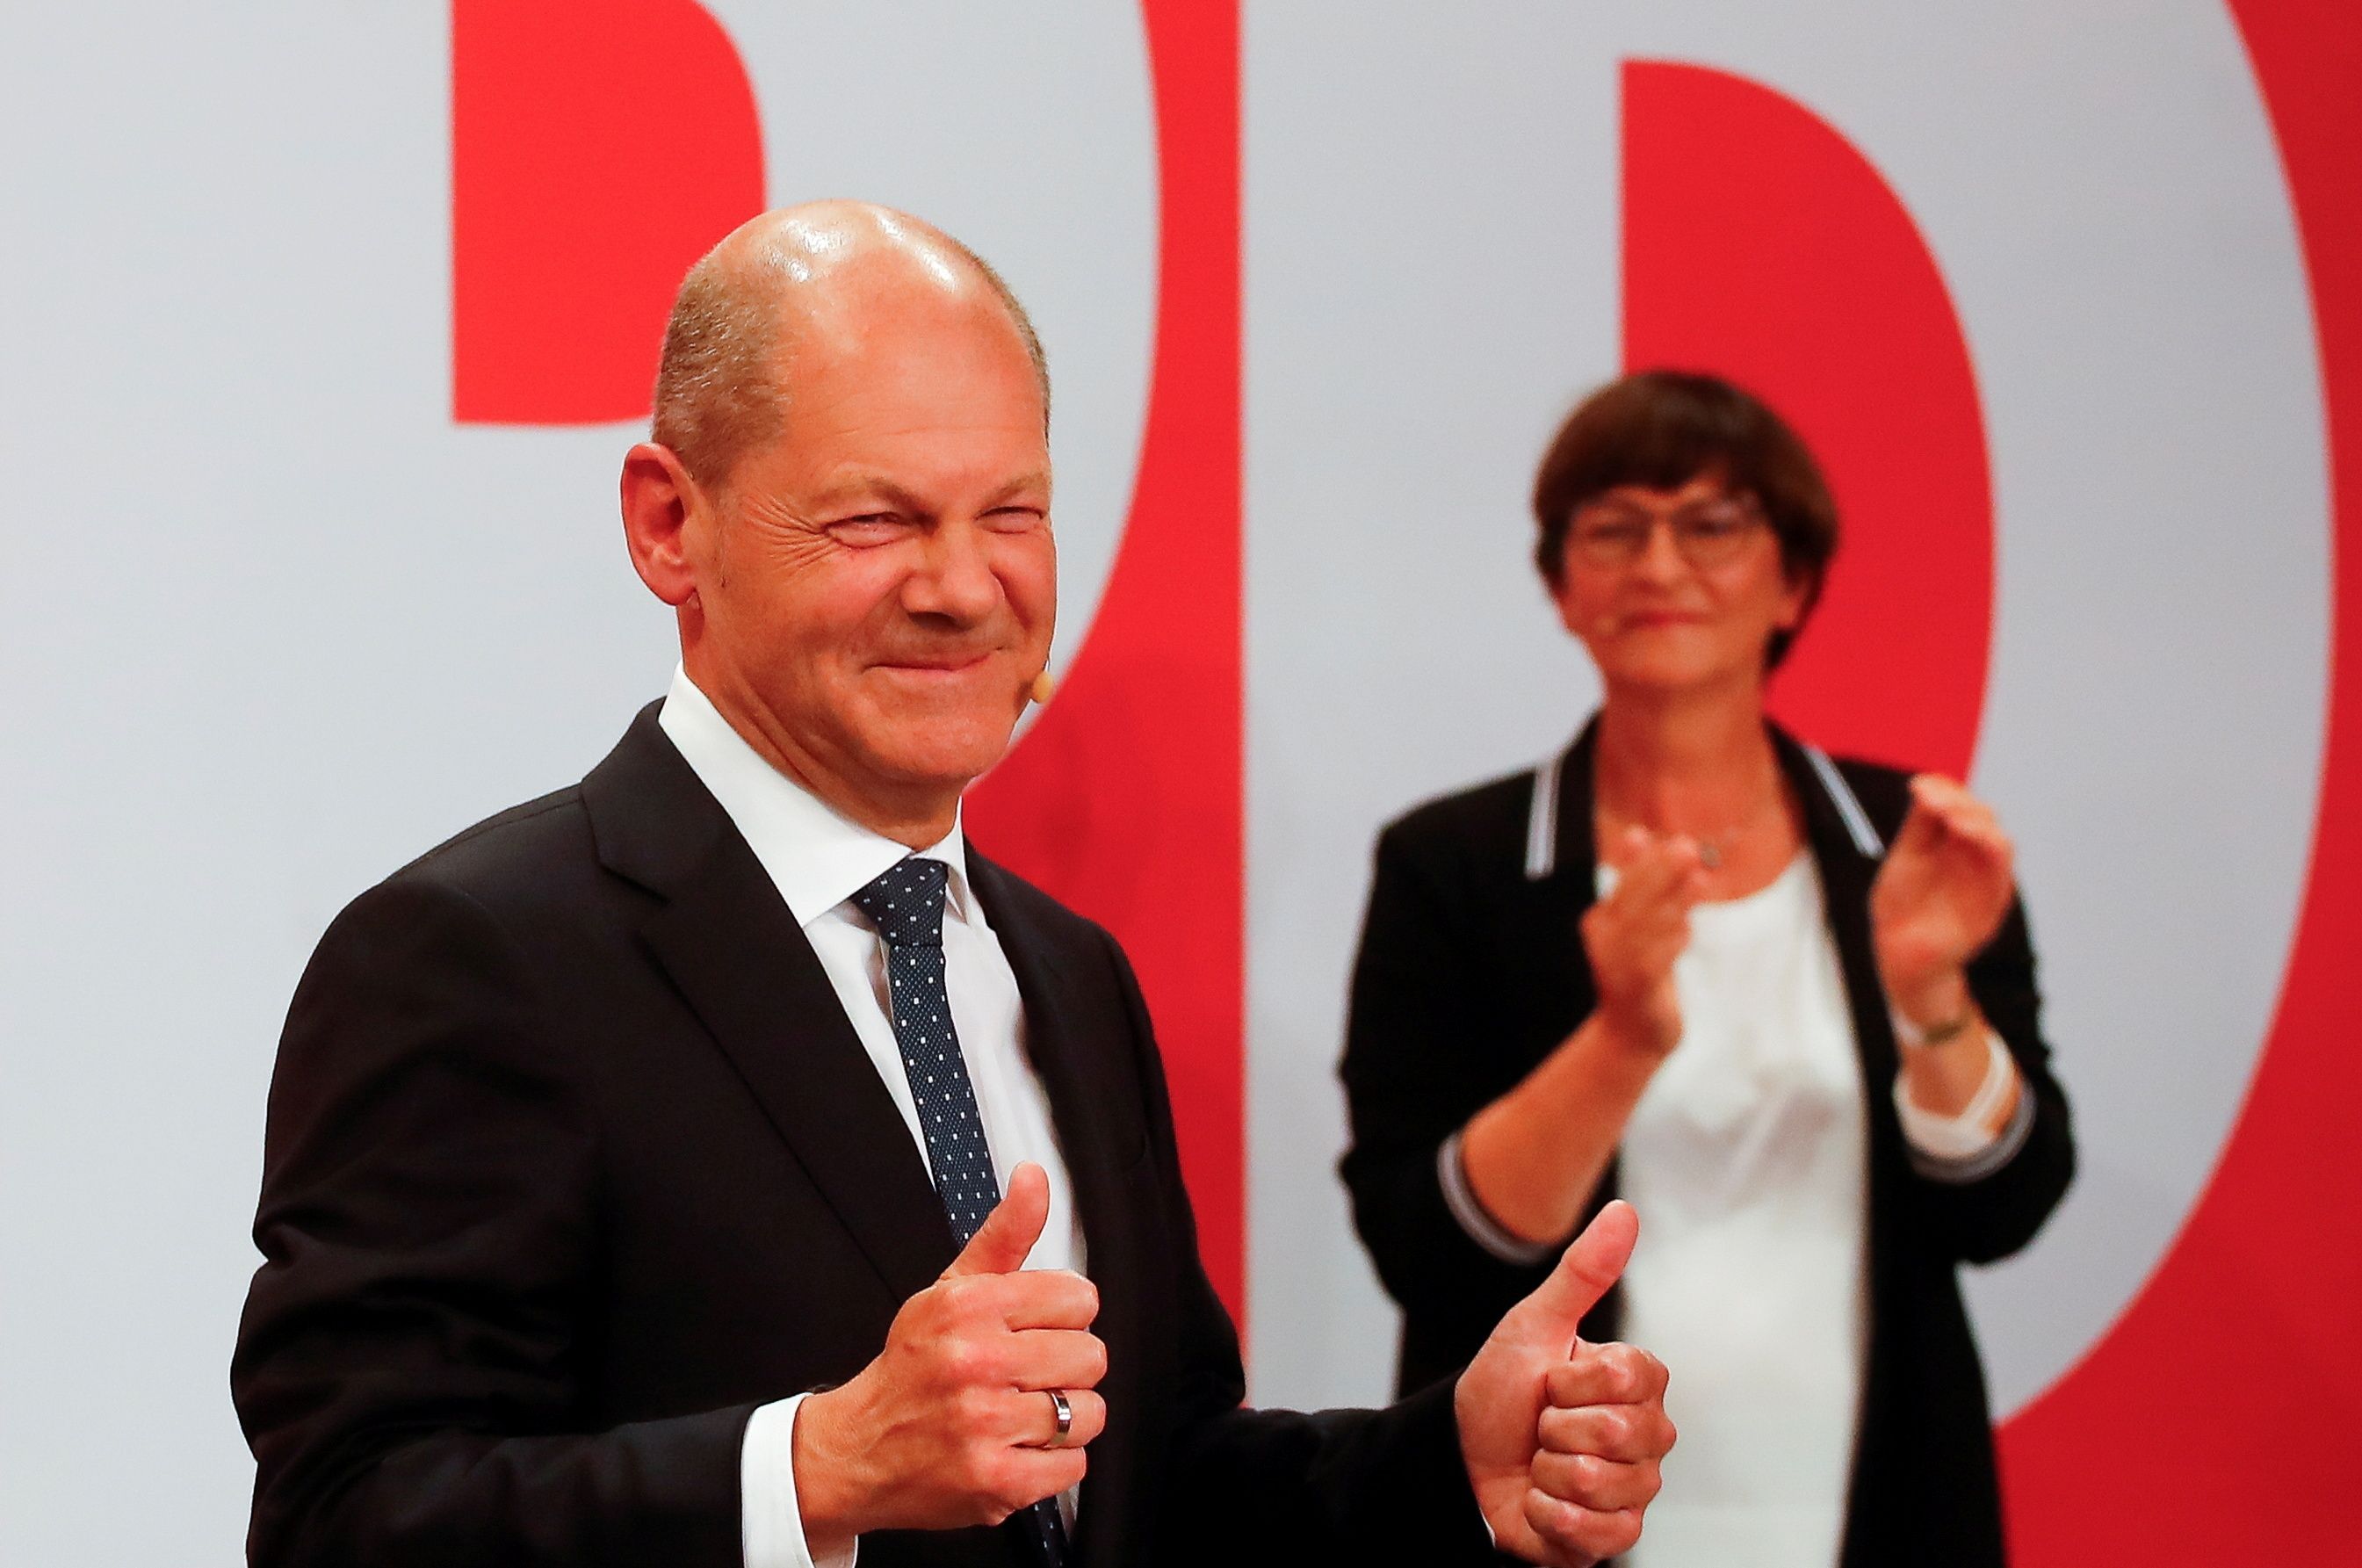 Le leader du SPD et candidat à la chancellerie Olaf Scholz après les élections fédérales en Allemagne,...